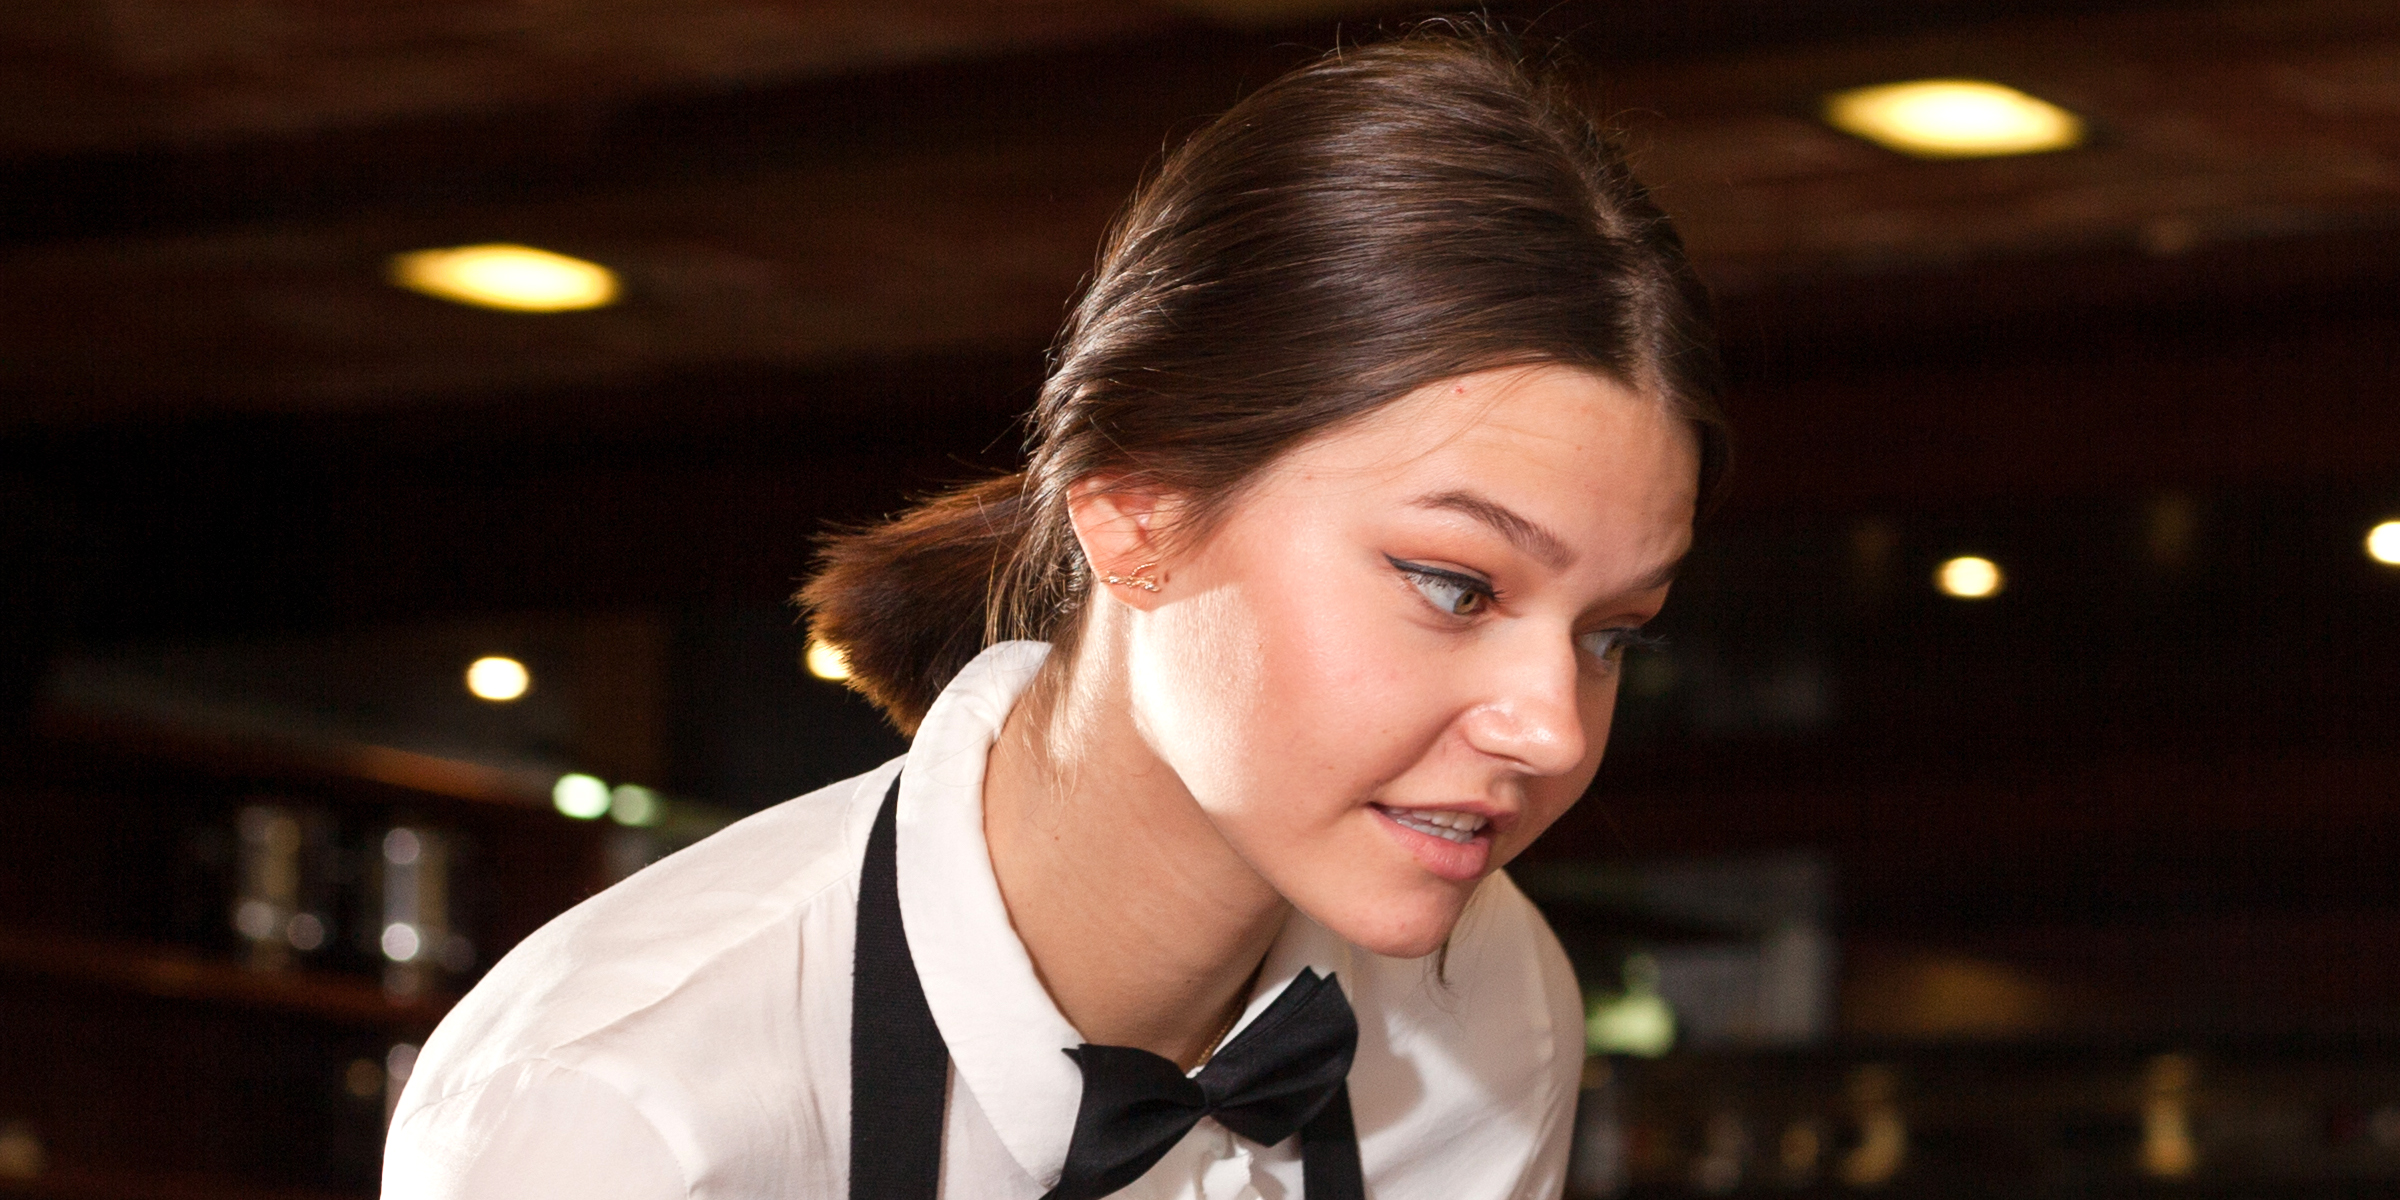 An entitled waitress | Source: Shutterstock